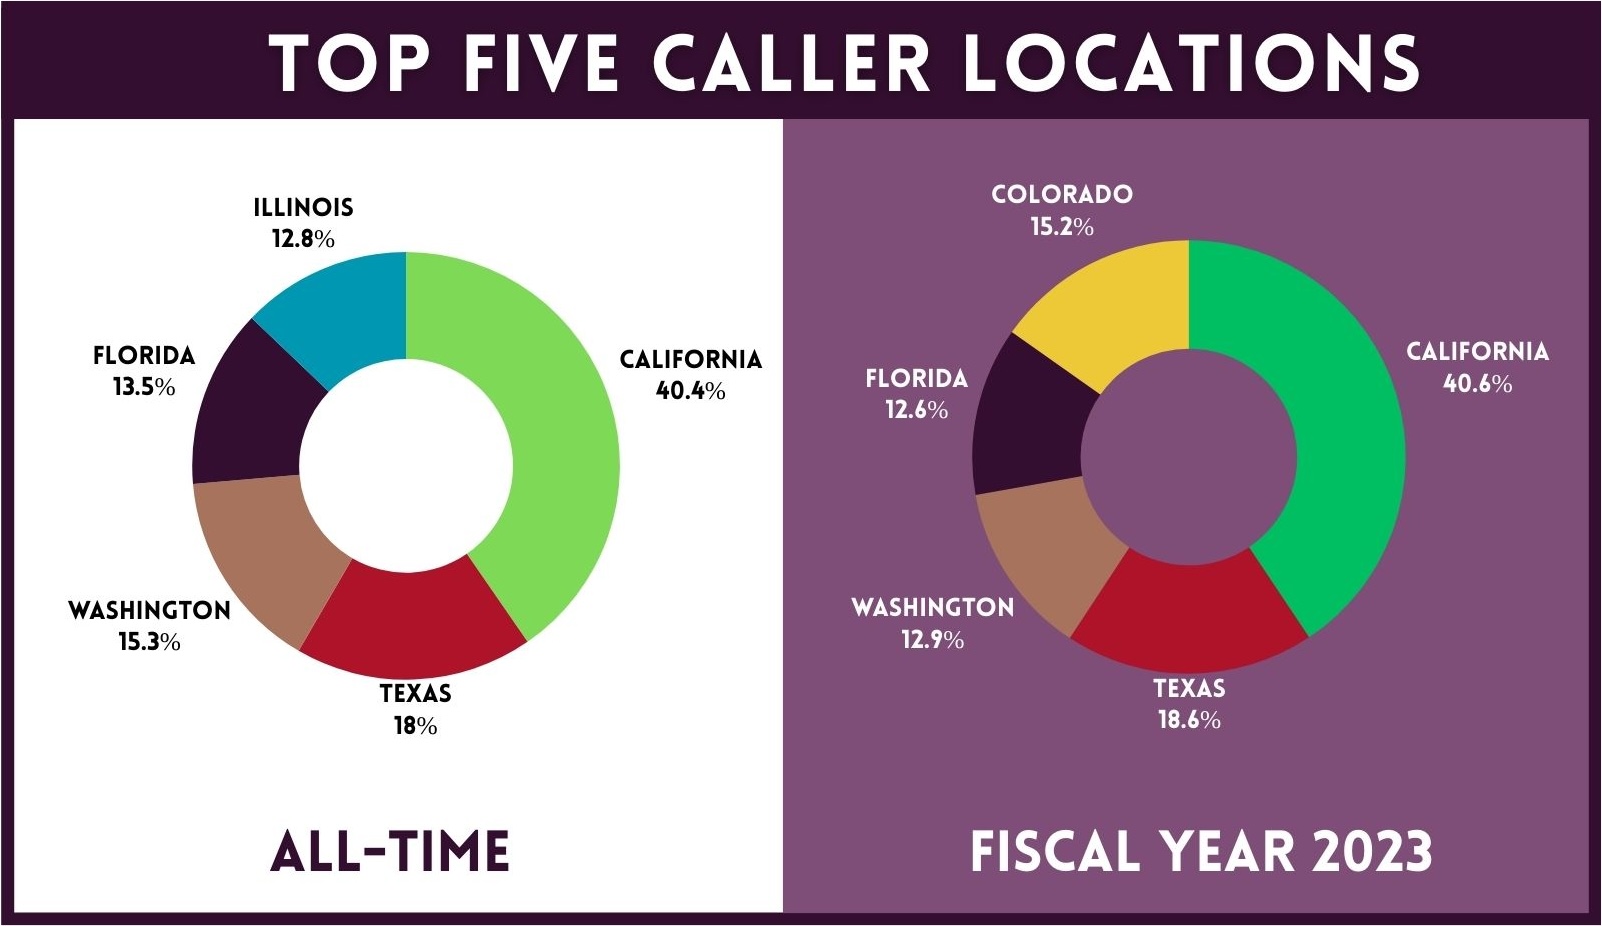 Top Five Caller Locations